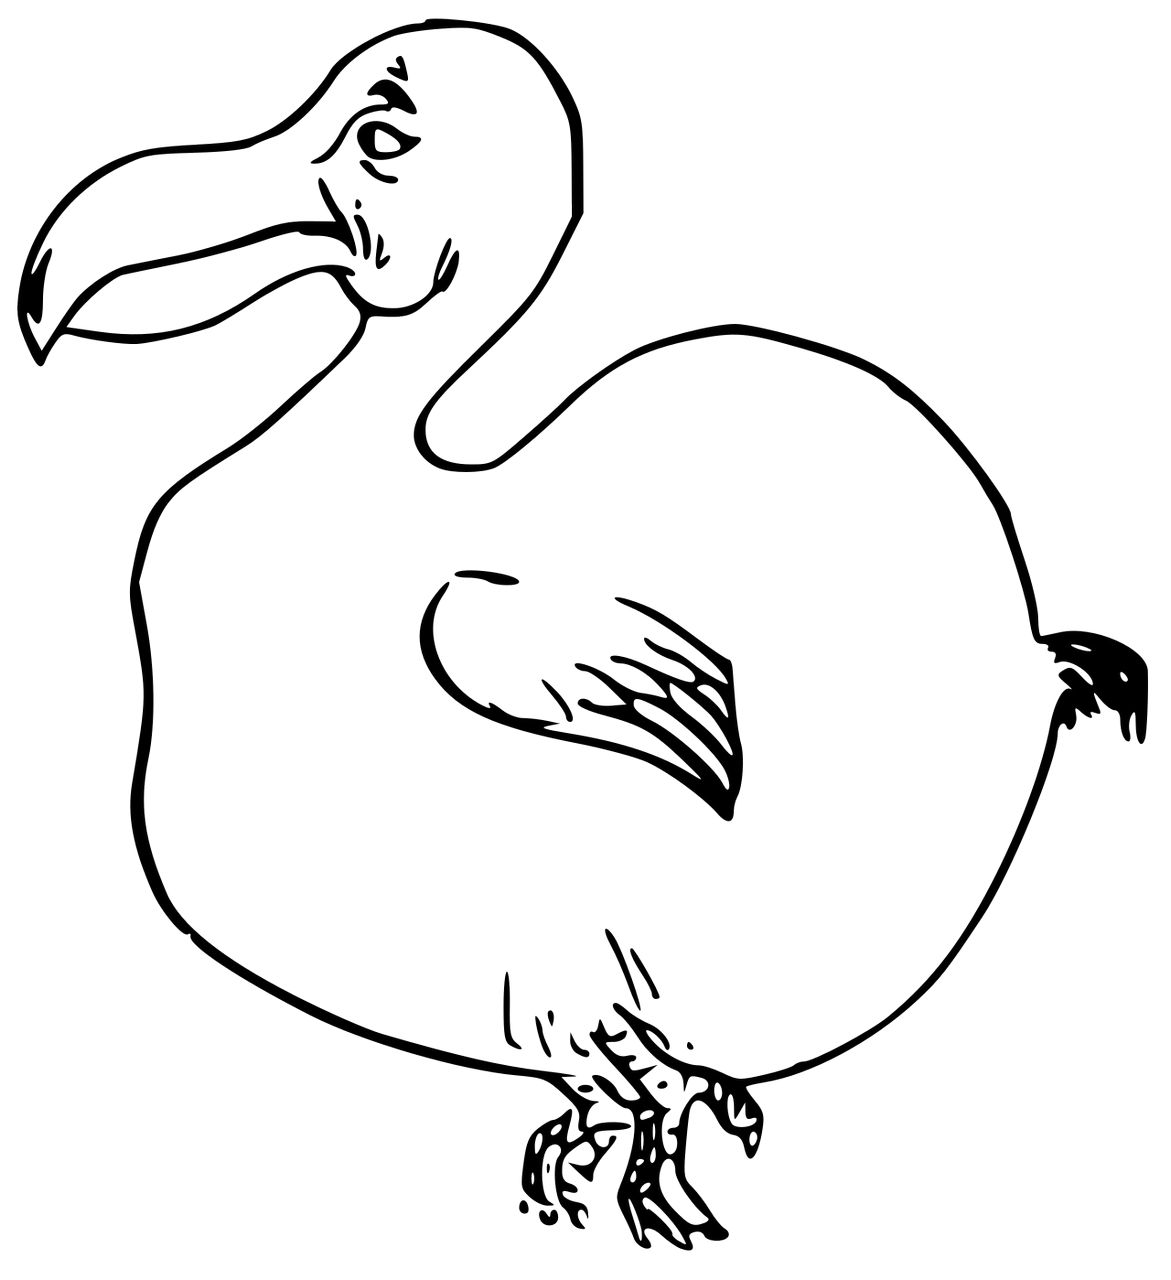 Omalovnka dodo k vytisknut na A4